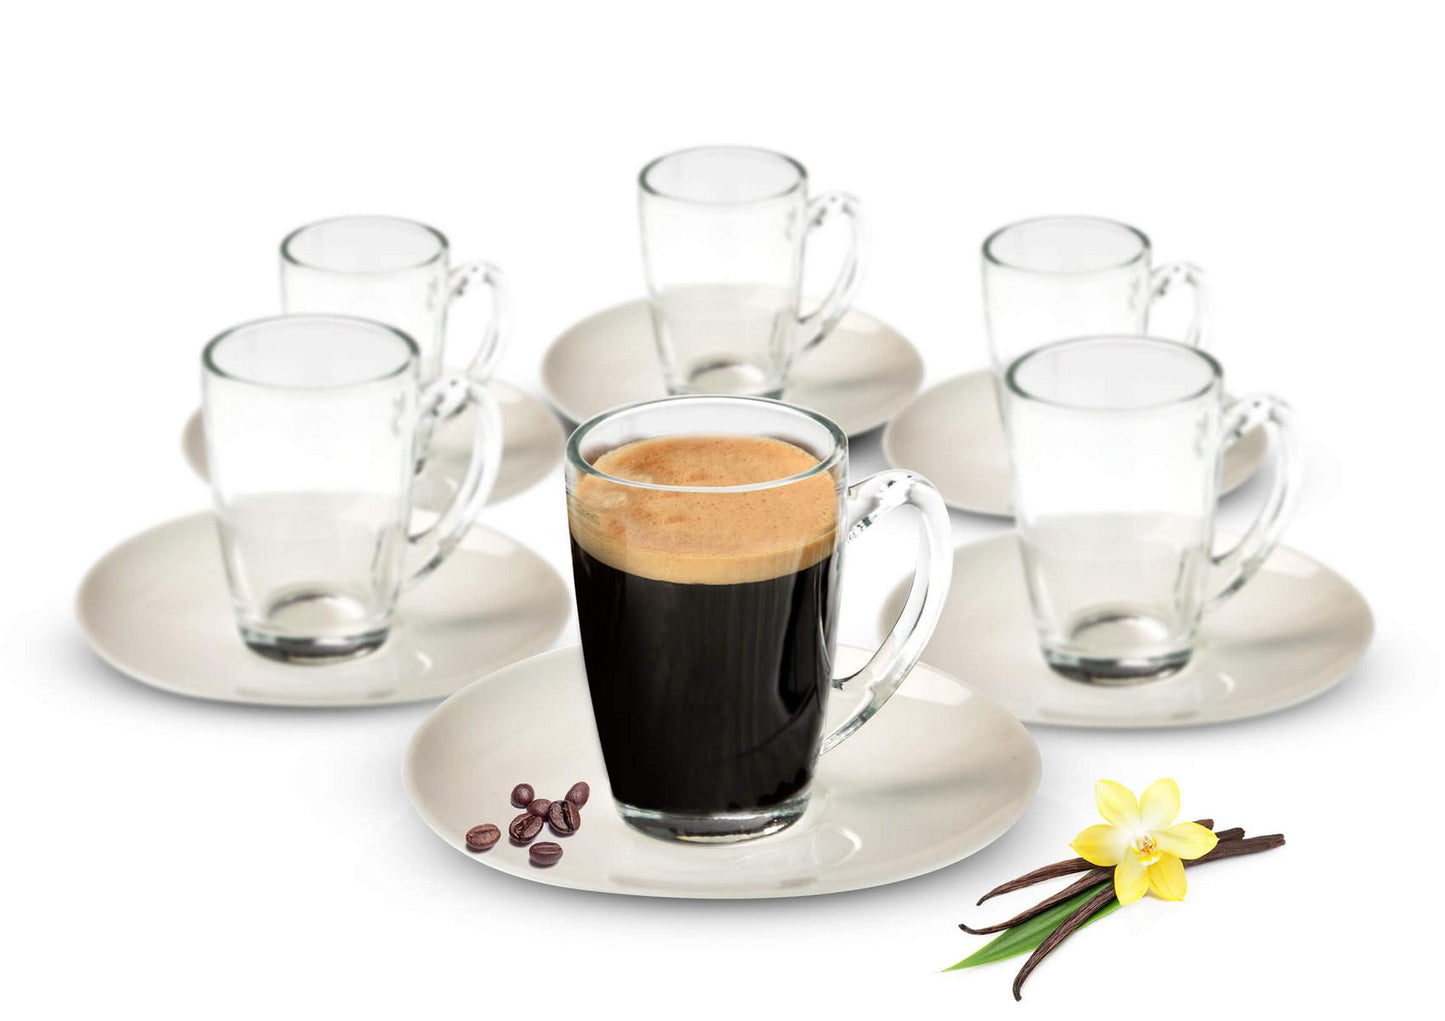 Tasses à expresso 12 pièces avec assiettes en porcelaine, verres à café, tasses à moka